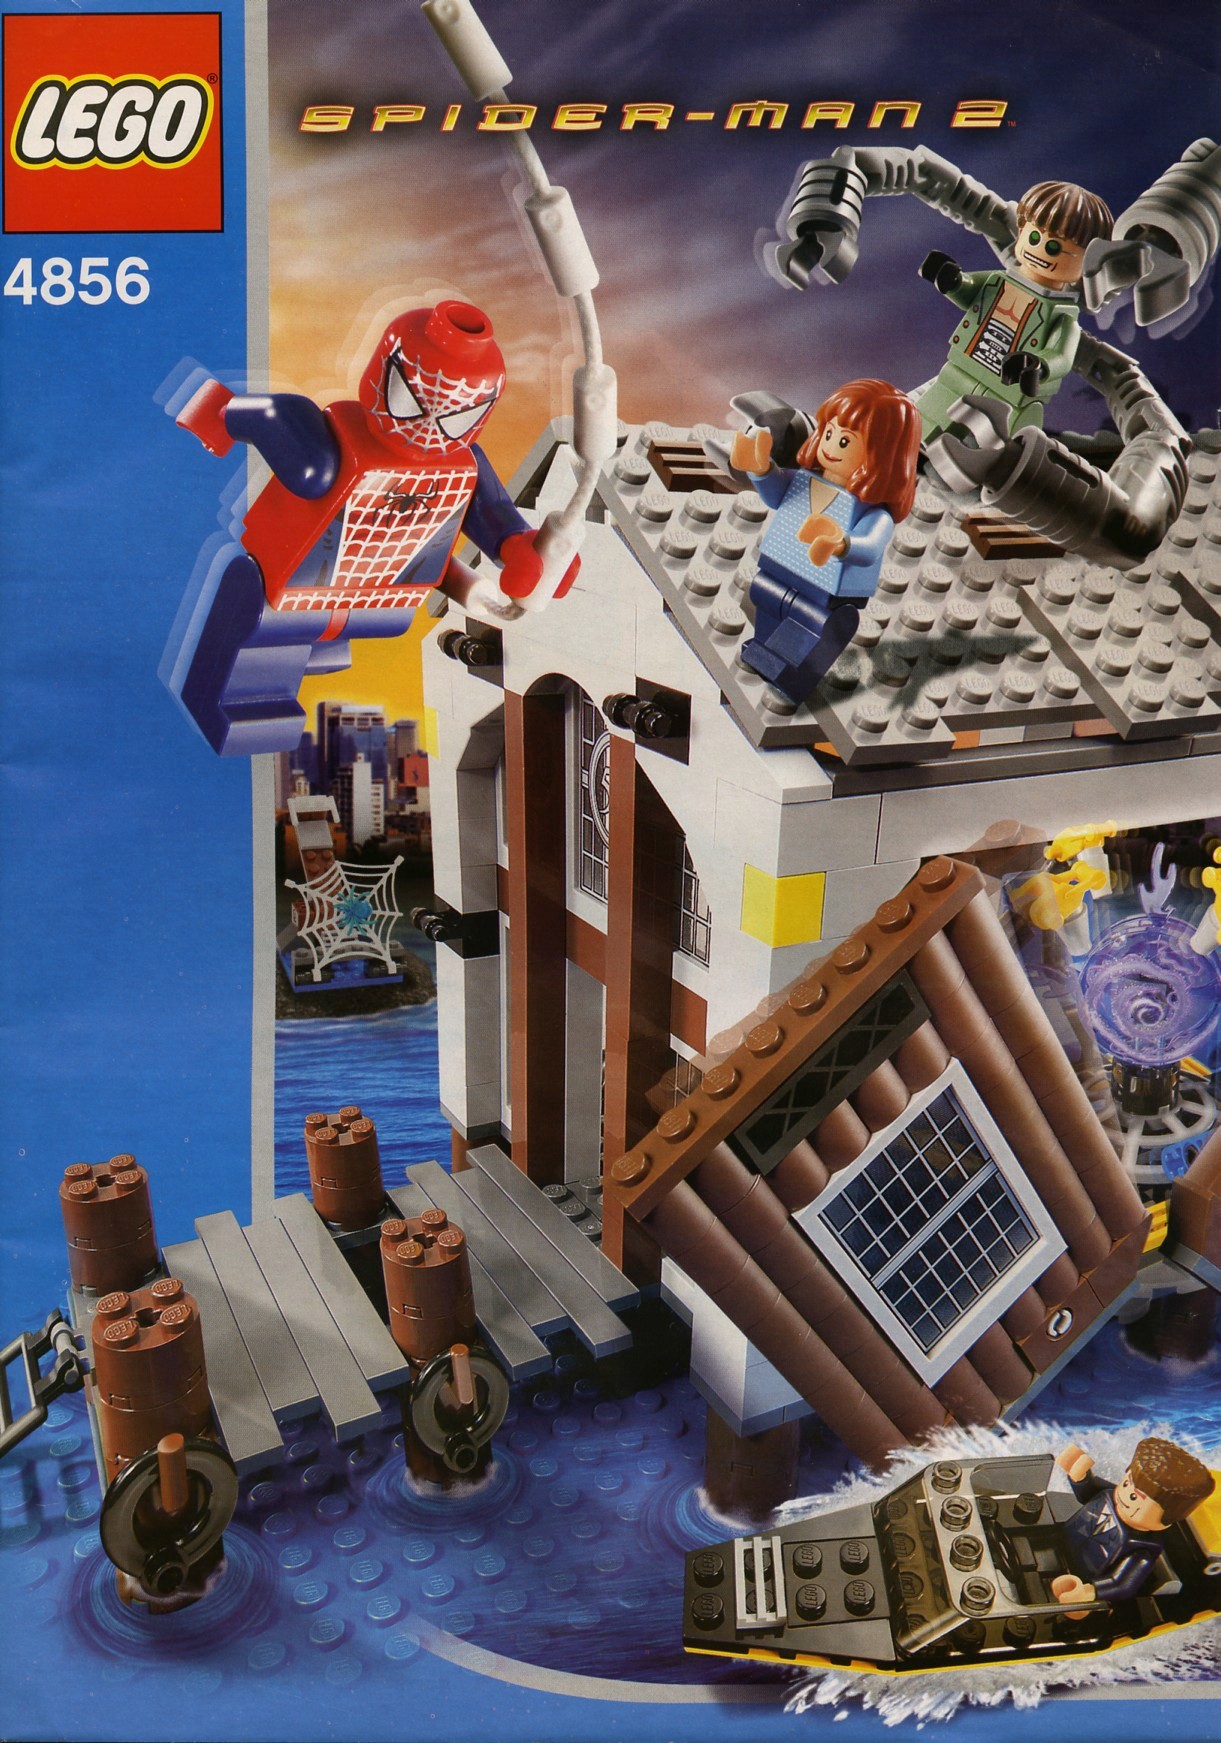 old lego spiderman sets